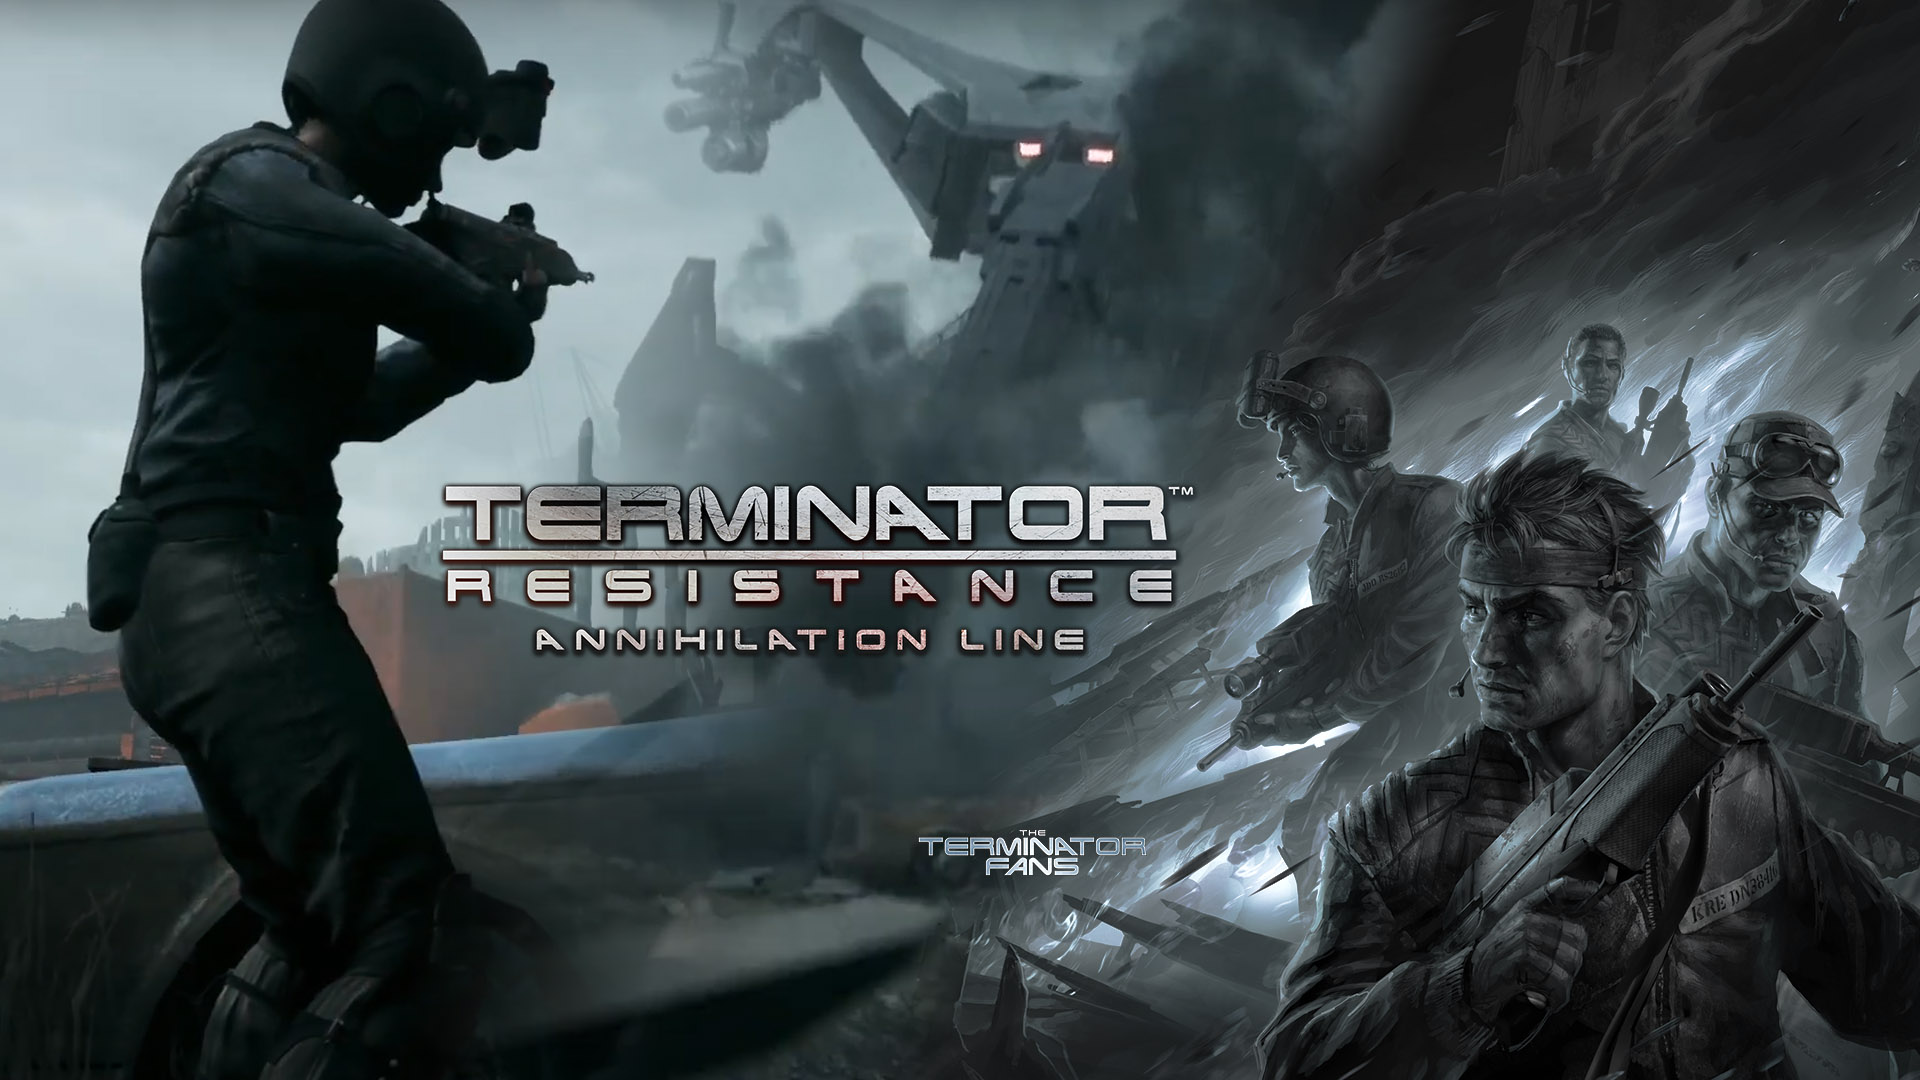 https://www.theterminatorfans.com/wp-content/uploads/2021/12/Terminator-Resistance-Annihilation-Line-Gameplay.jpg